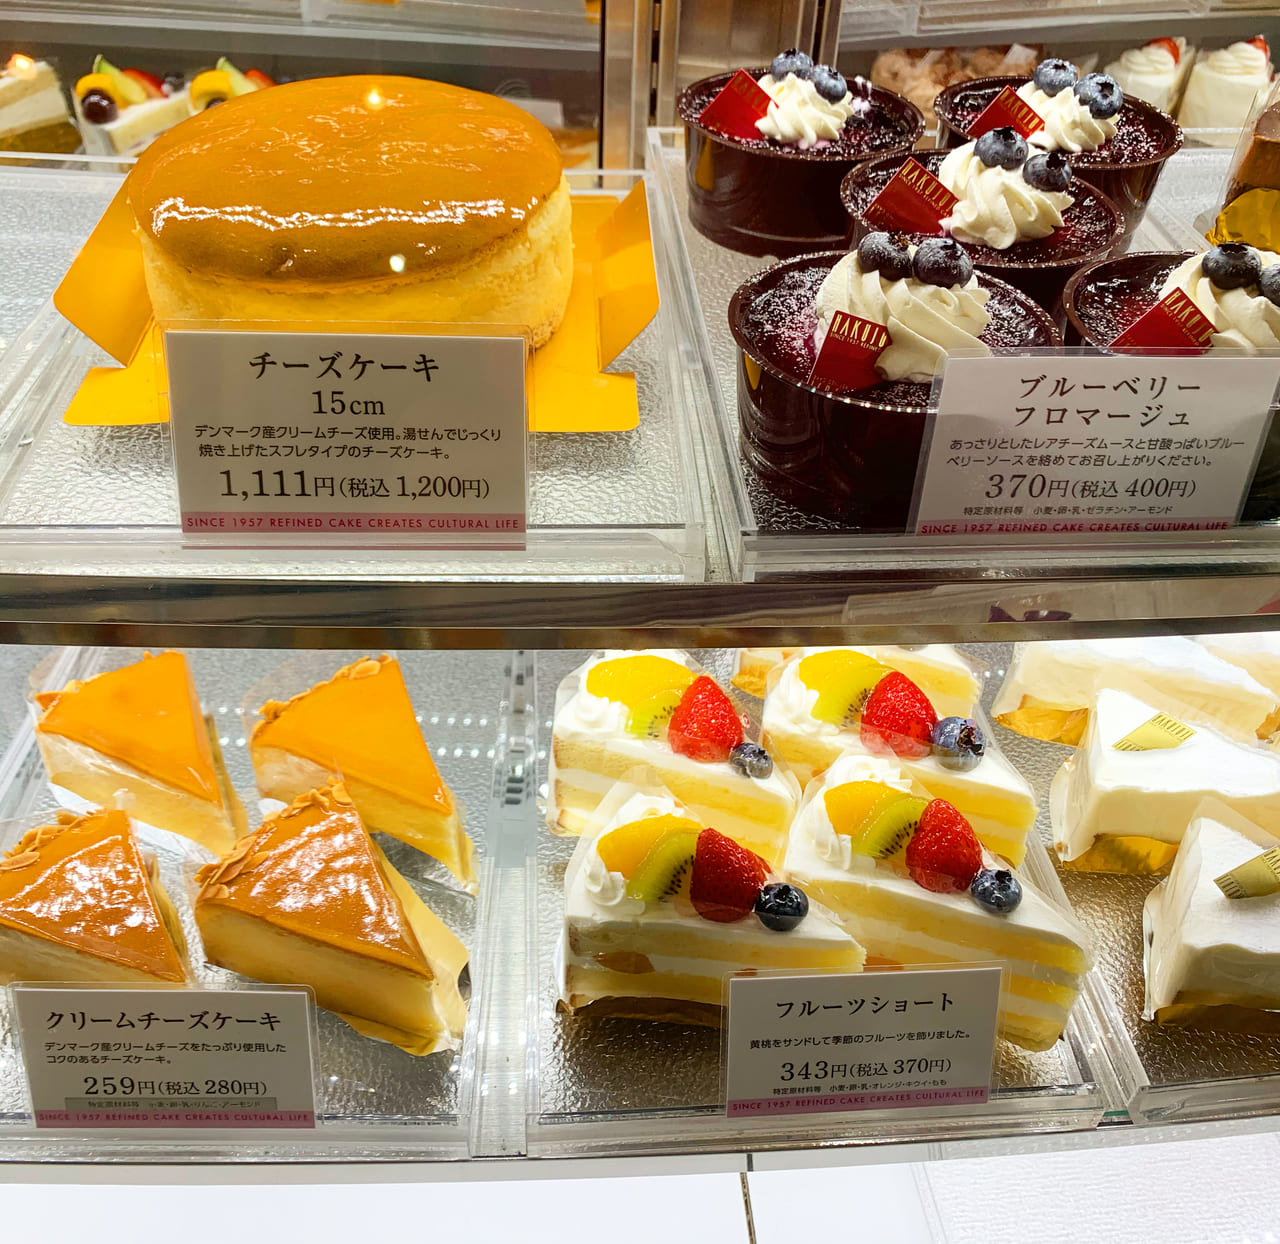 神戸市垂水区 須磨区 Hakujuji 白十字 のケーキがリーズナブルでおいしいと話題 喫茶も人気 号外net 神戸市垂水区 須磨区